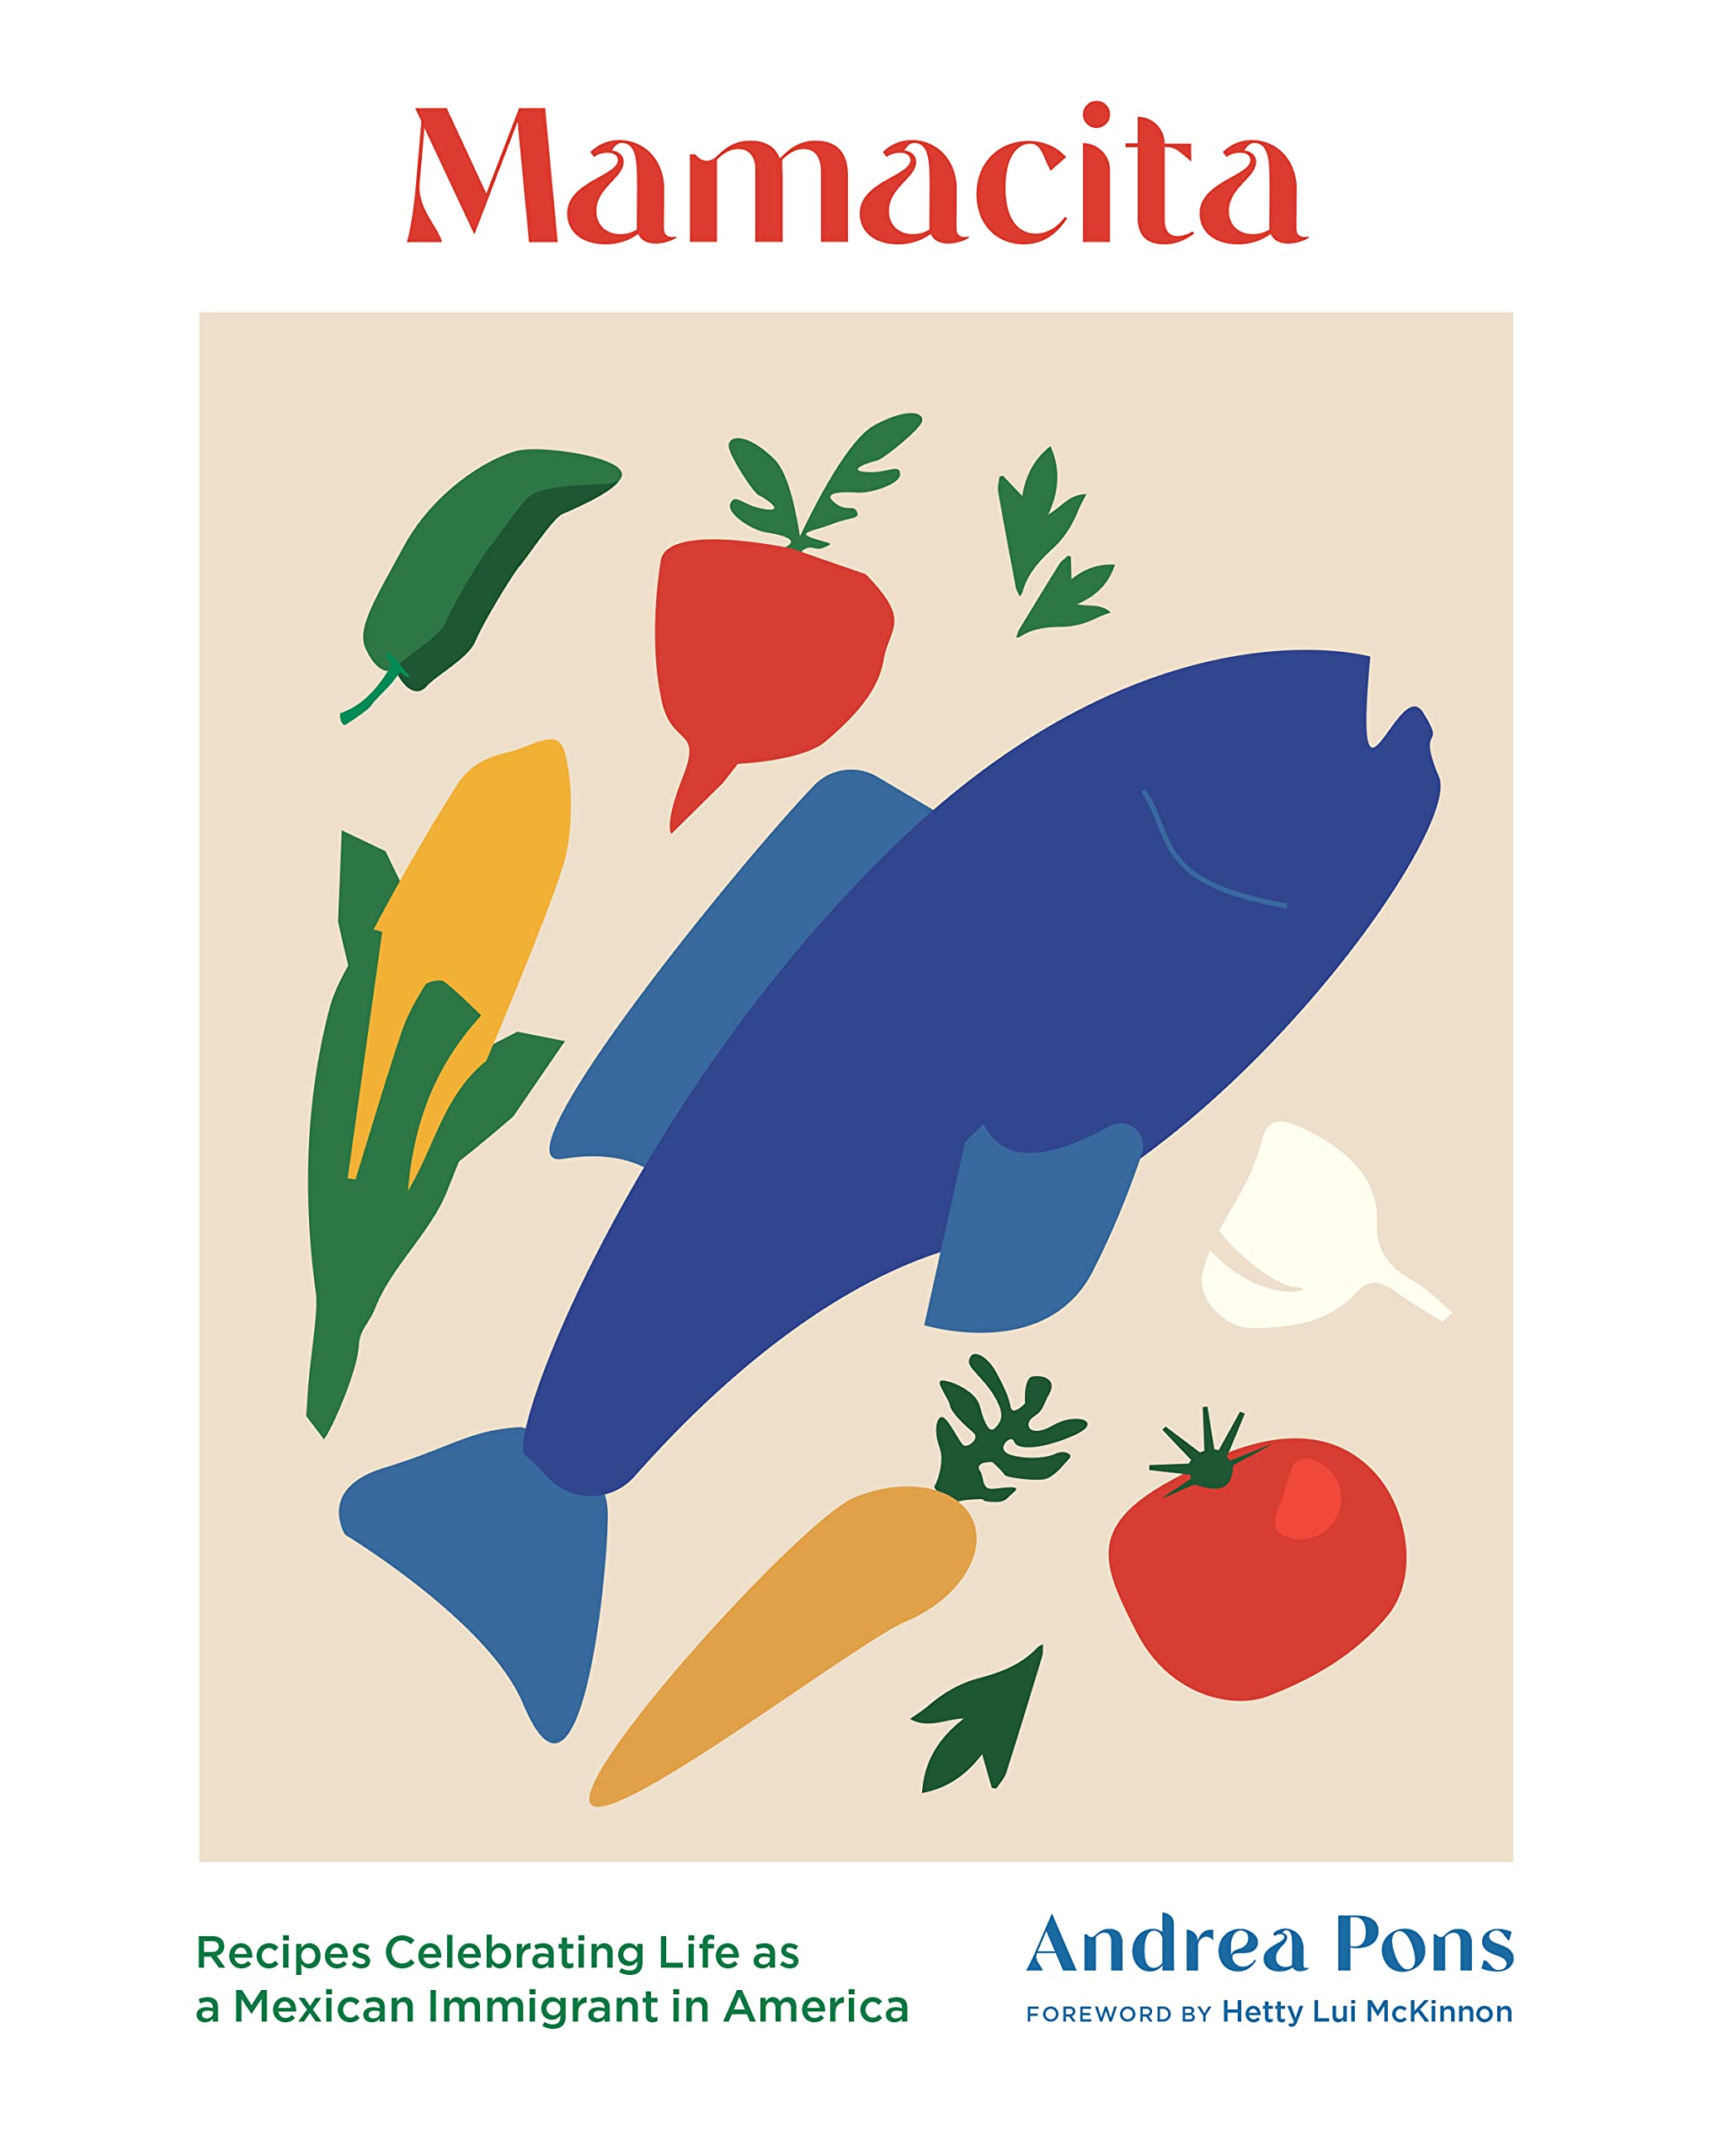 Mamacita: Recipes Celebrating Life as a Mexican Immigrant in America (Andrea Pons, Matt Ogle)